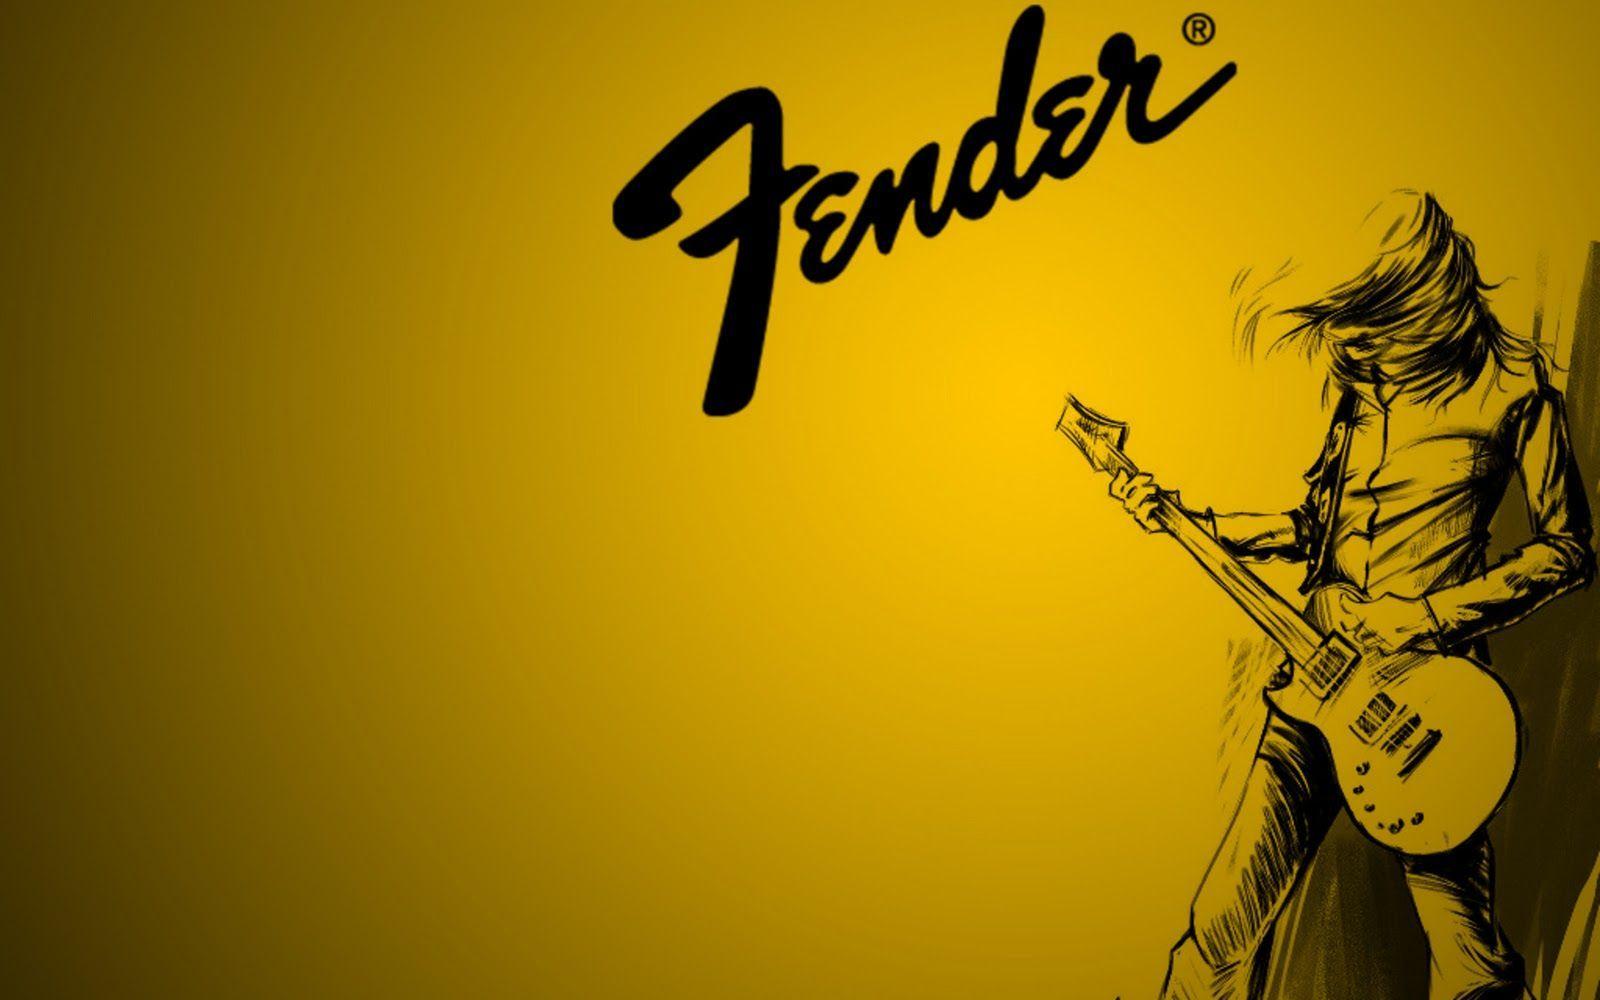 Fender Guitar Yellow Wallpaper For Desktop HD Wallpaper in Music. Music wallpaper, Guitar image, Fender guitars